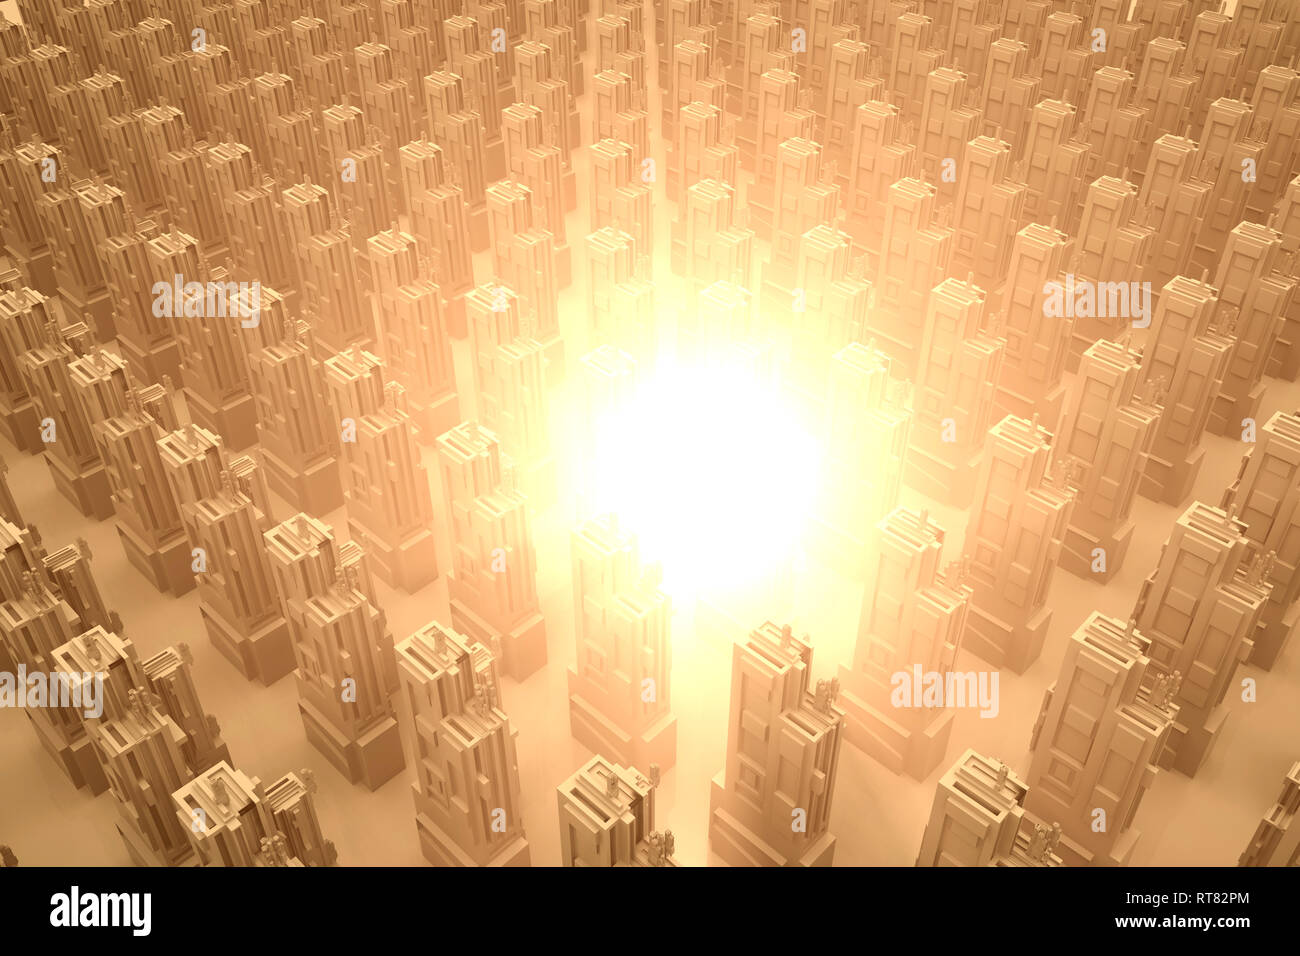 Ráfaga de energía o explosión en una ciudad conceptual, 3D Rendering Foto de stock